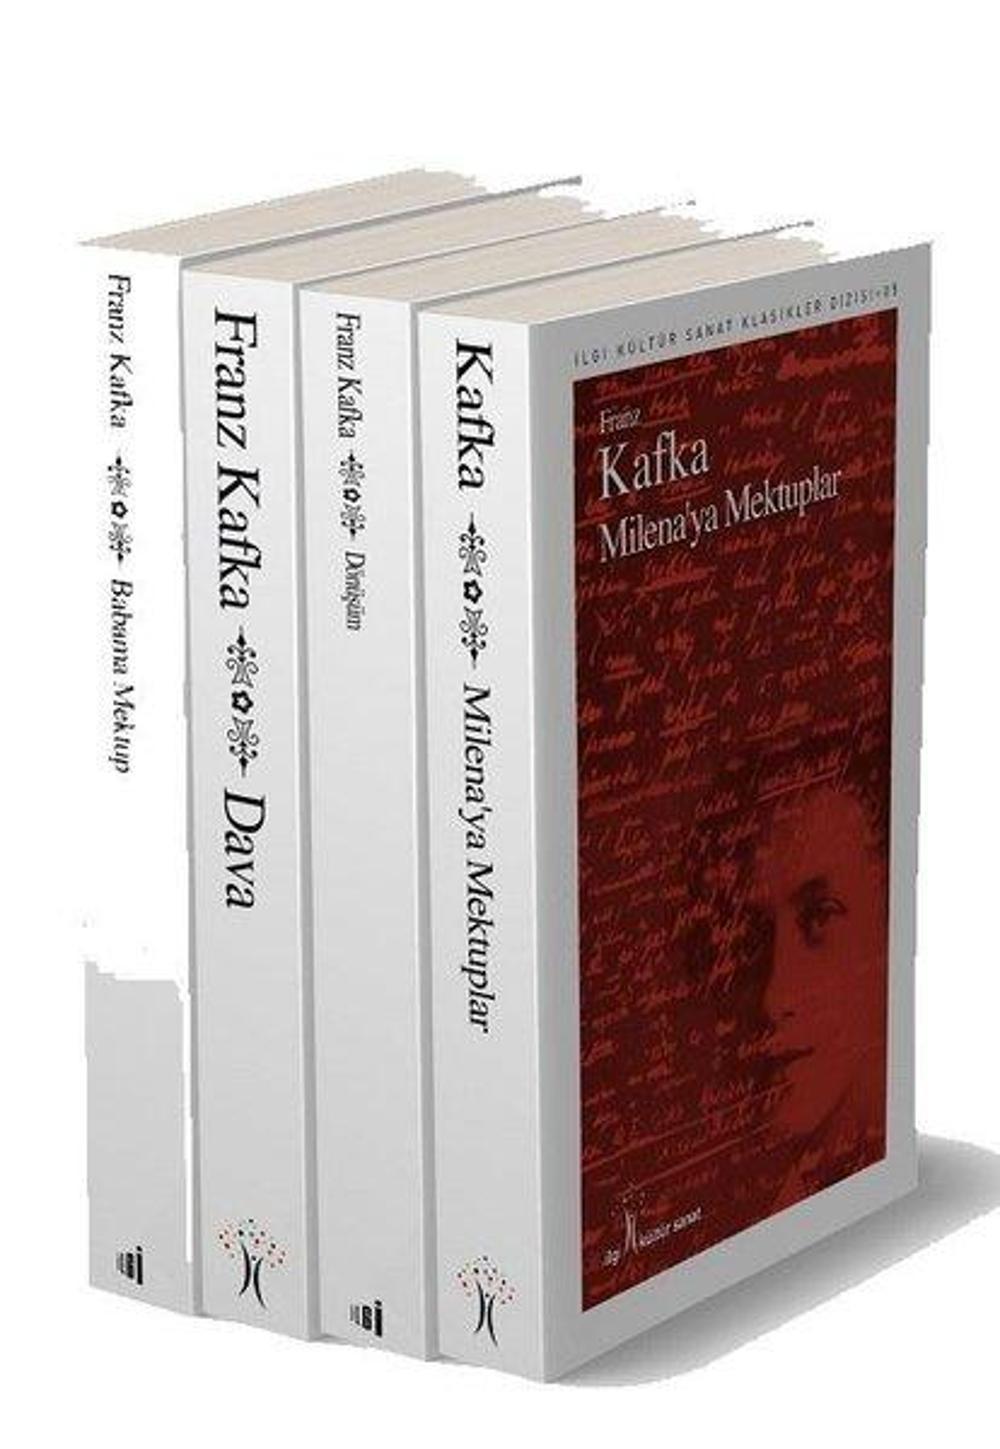 Franz Kafka Set - 4 Kitap Takım | İlgi Kültür Sanat Yayınları